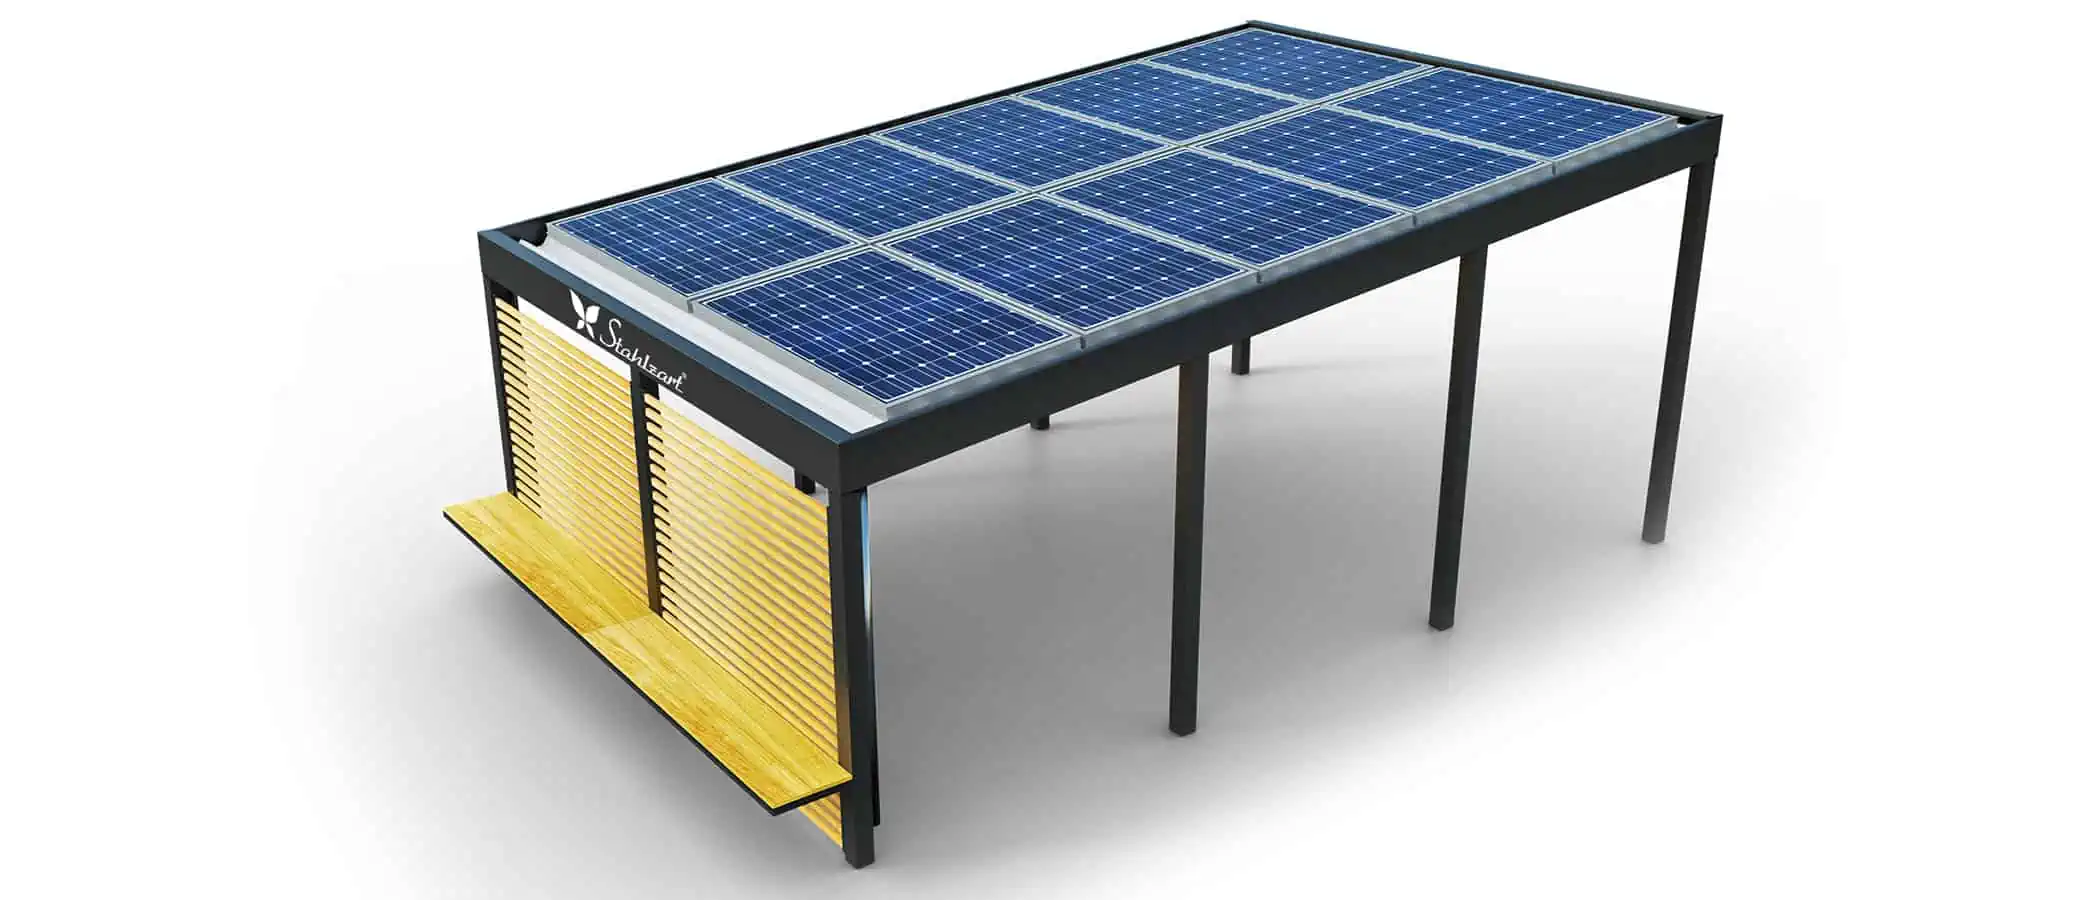 solar-carport-mit-pultdach-carports-solarcarport-pultdach-carportdach-design-strom-angebot-photovoltaikanlage-module-solardach-metall-stahl-holz-laerche-seitenwand-mit-bank-modern-stahlzart